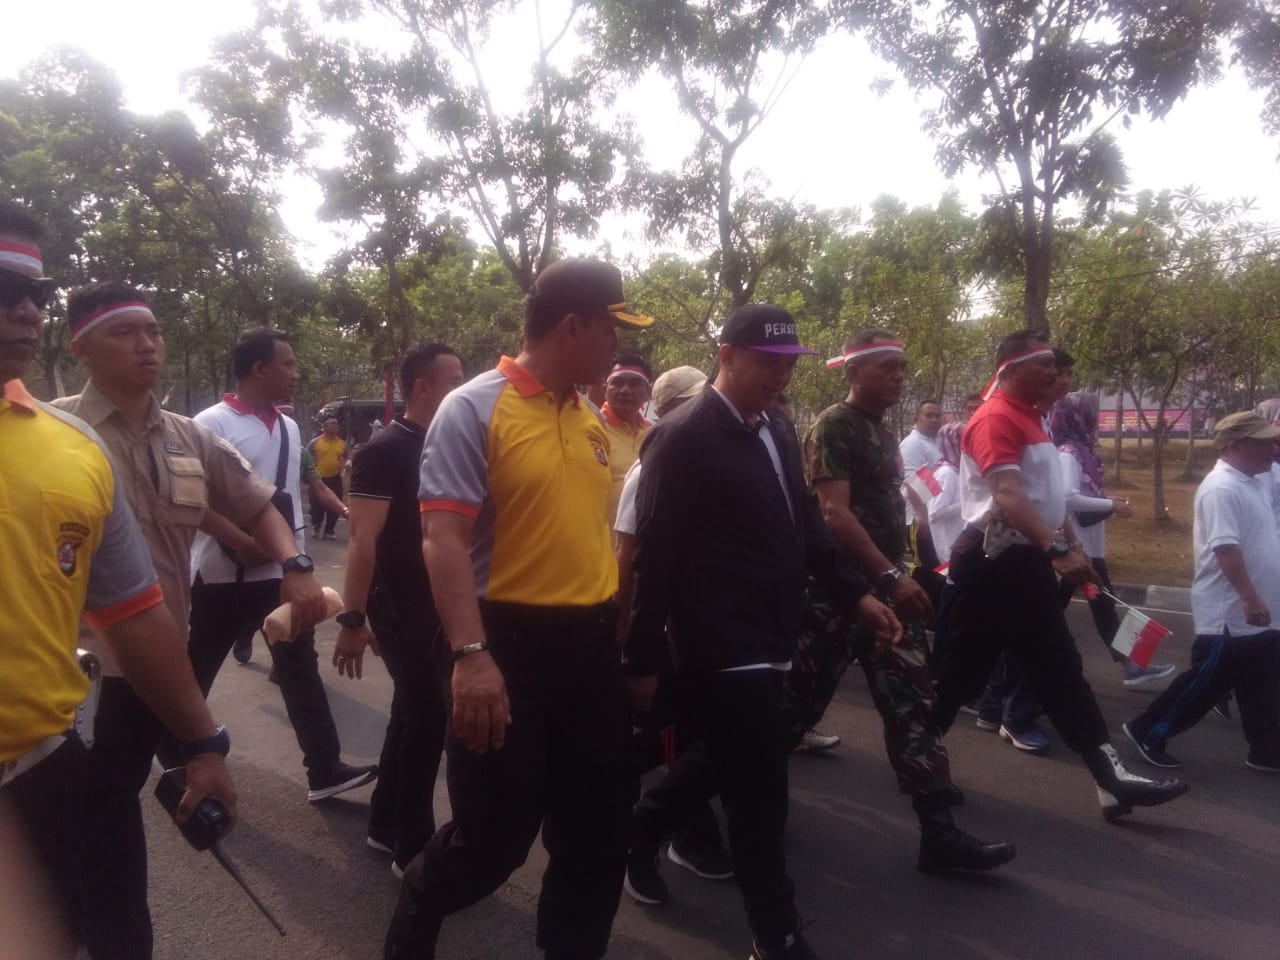 Bupati Tangerang Ahmed Zaki Iskandar dan Waka Polresta Tangerang AKBP Komarudin bersama rombongannya dalam kegiatan parade dan senam kebangsaan di Kabupaten Tangerang, Jumat (18/10/2019).